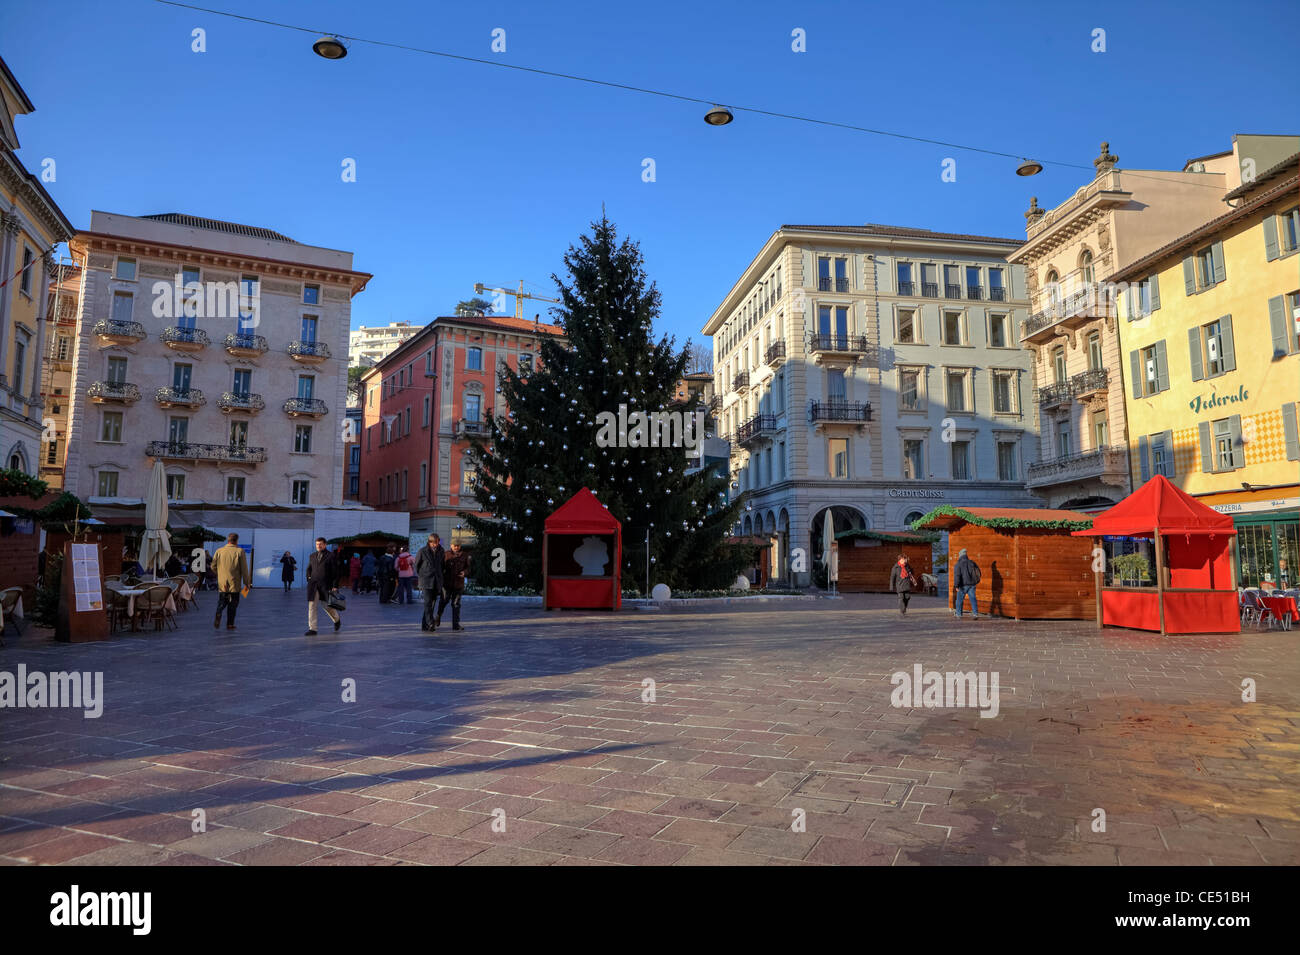 Lugano Natale.Lugano Christmas High Resolution Stock Photography And Images Alamy